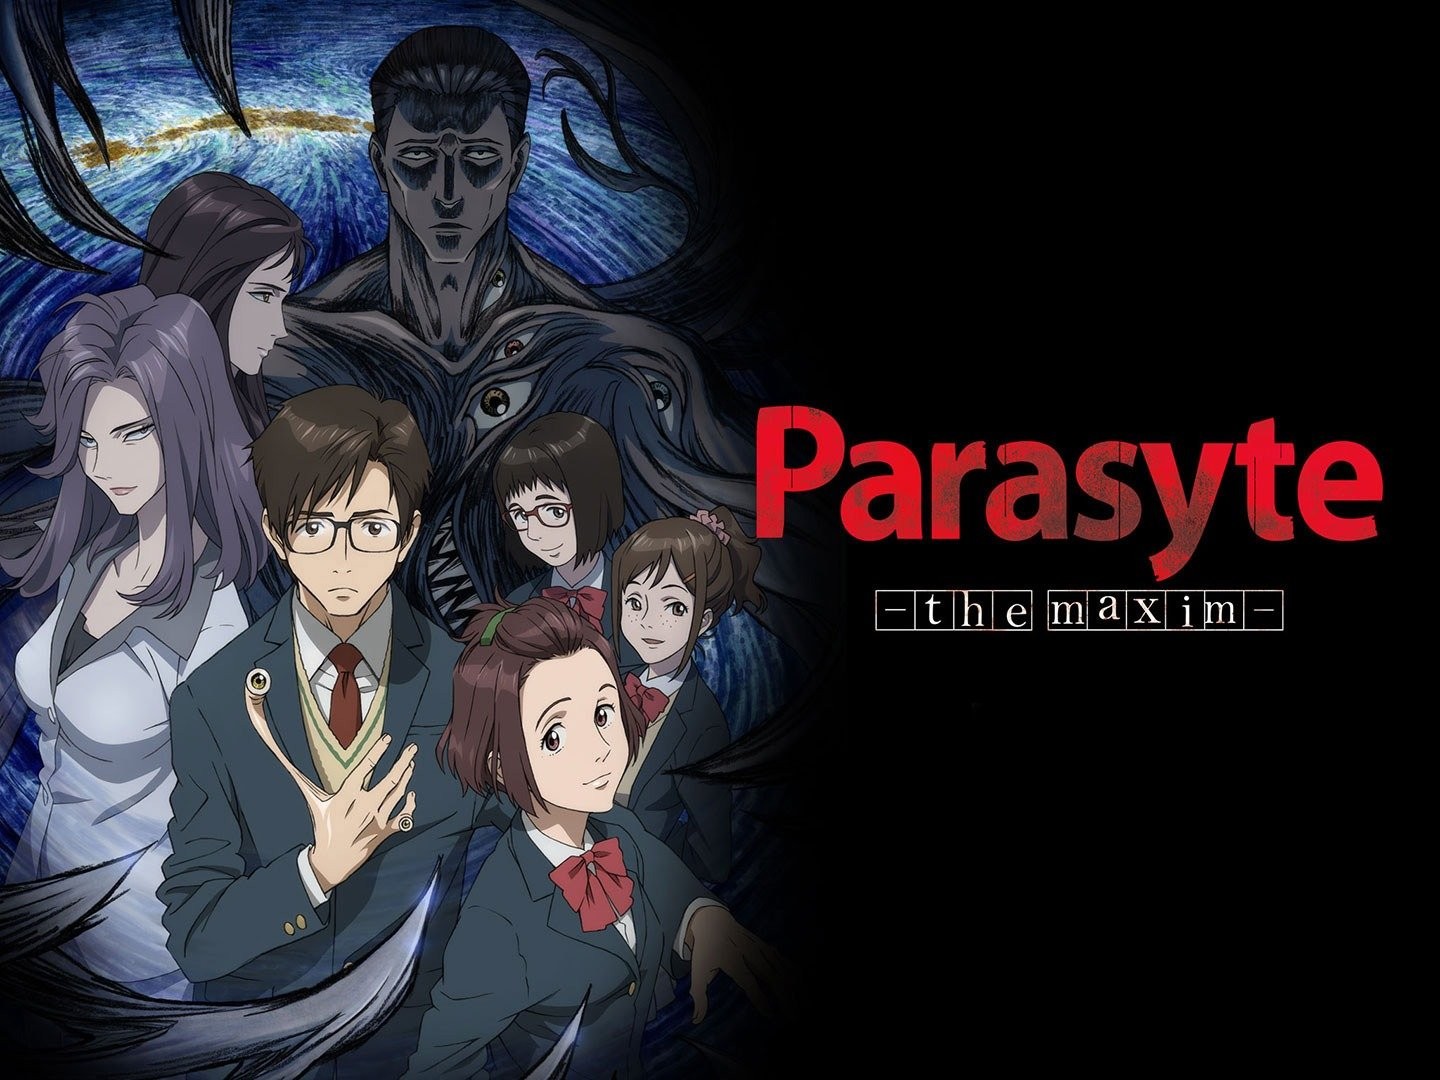 Parasyte Anime Official Trailer - YouTube